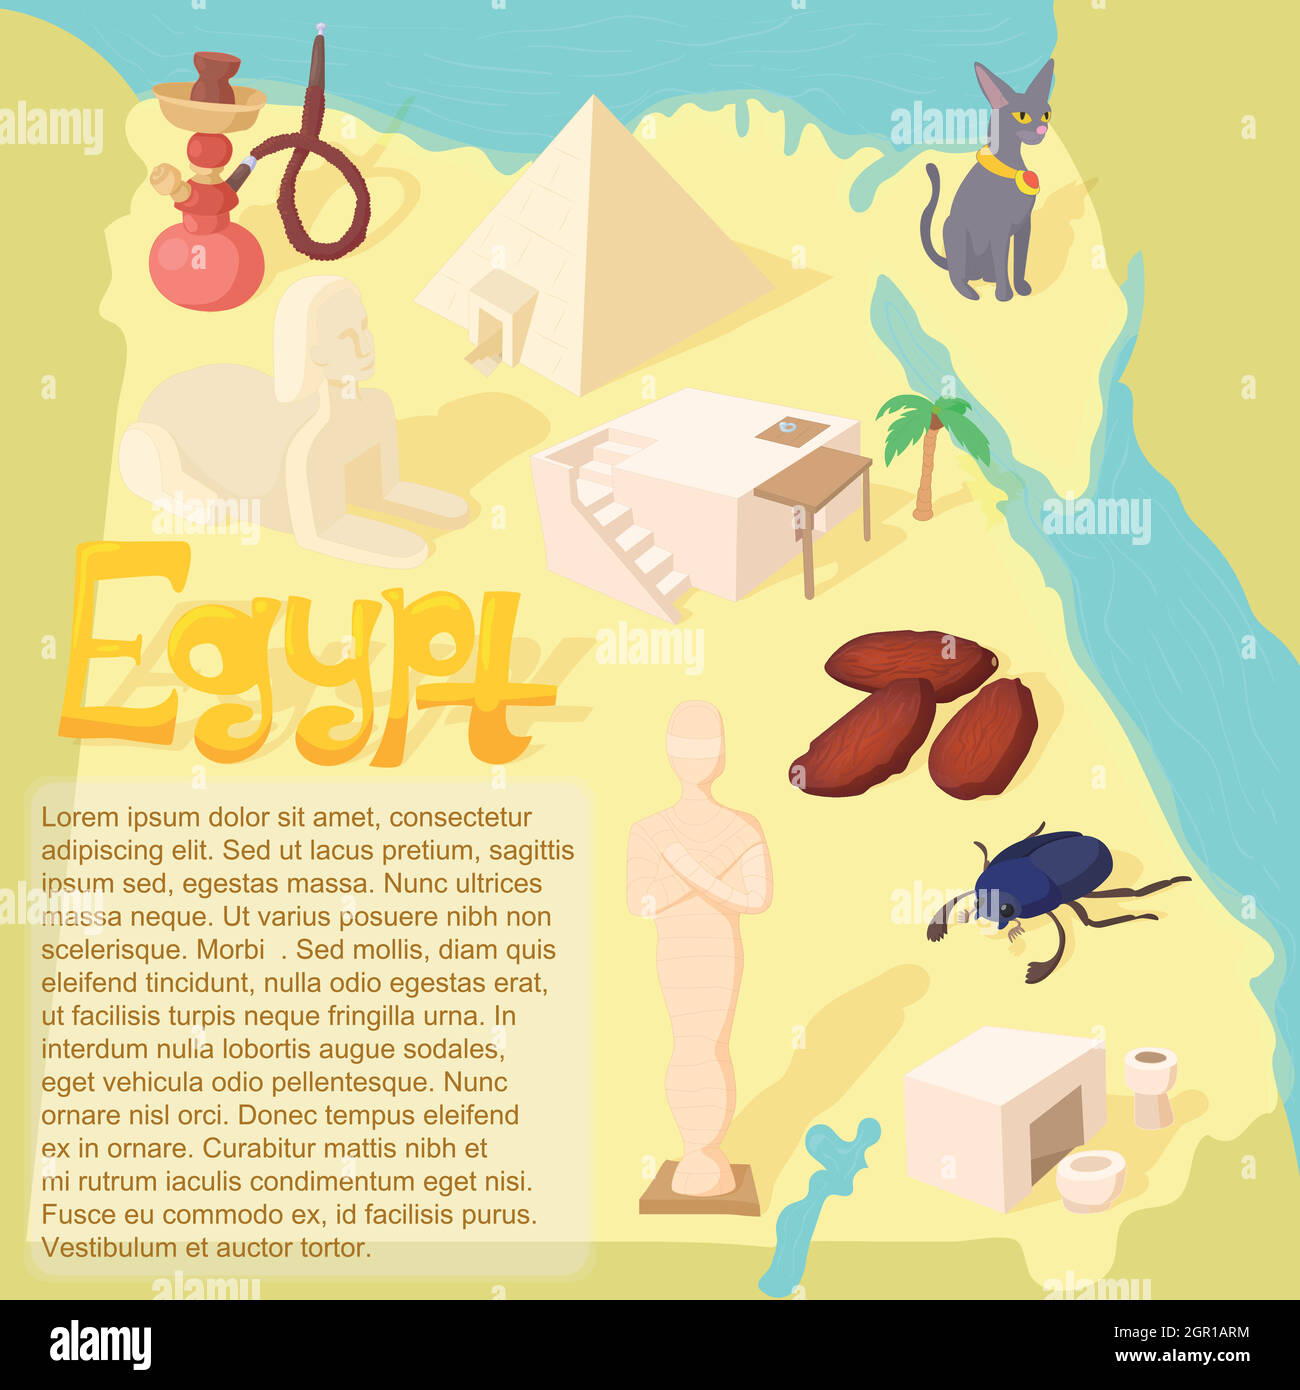 Diseño Egipto mapa travel y concepto histórico Ilustración del Vector